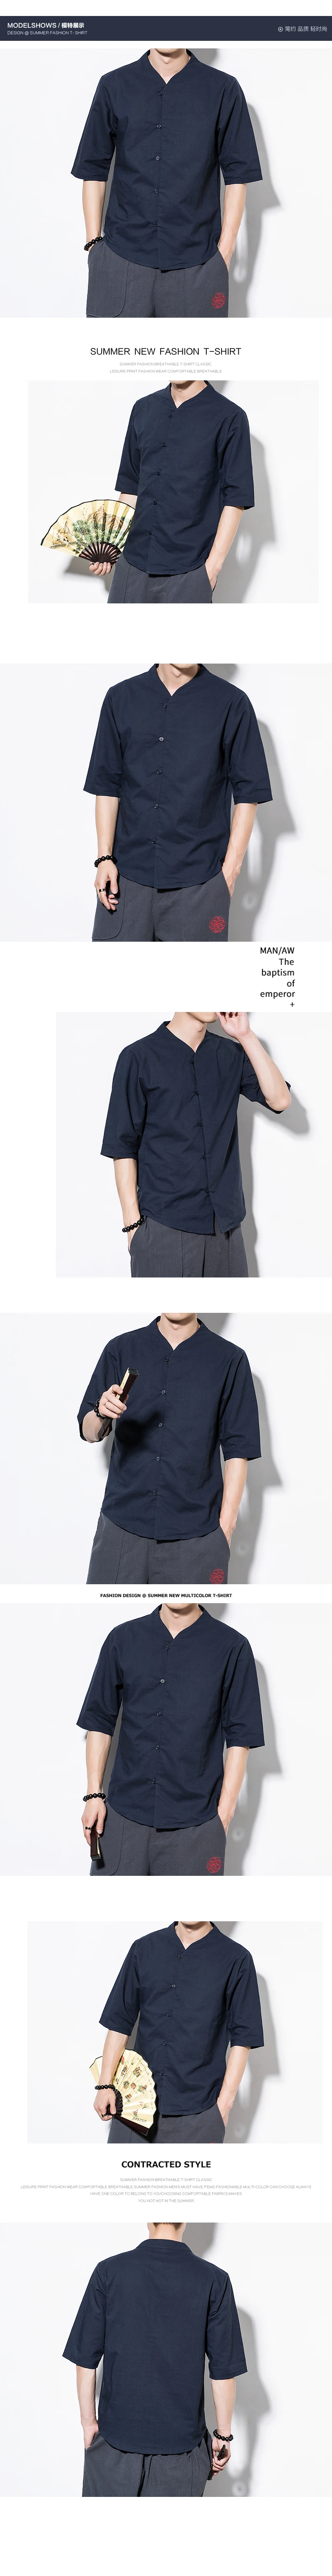 2019 мужской летний отдых хлопок льняная рубашка прекрасный дизайн человек пять минут Рубашка с короткими рукавами Для мужчин; однотонные